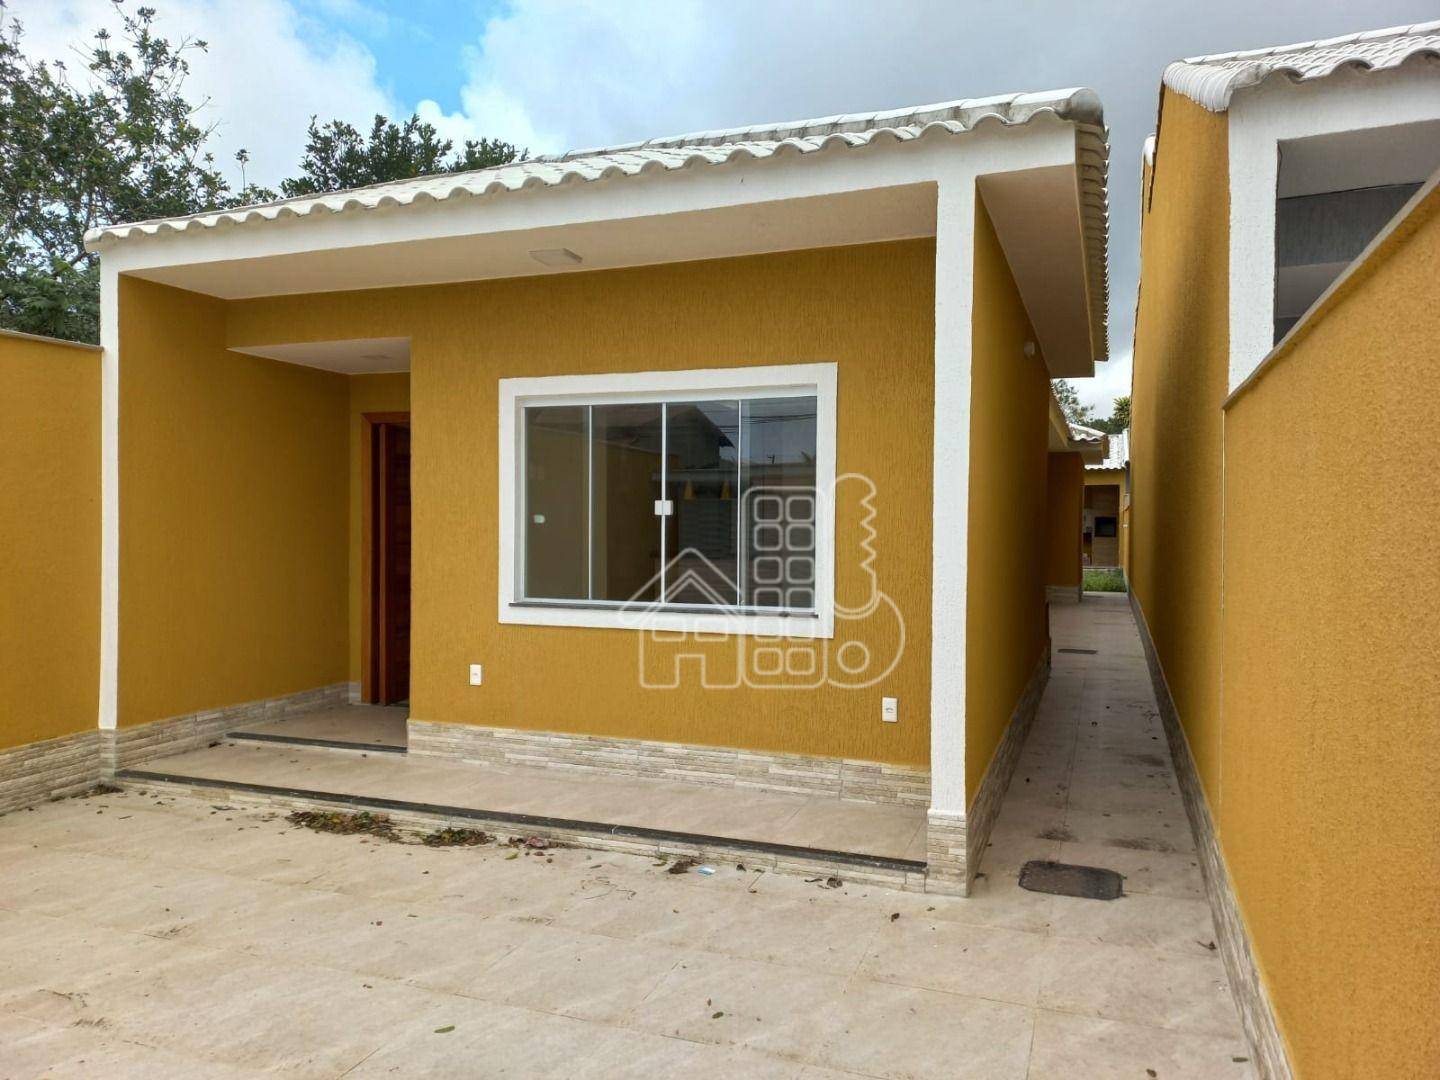 Casa 3 quartos à venda, 116 m² por R$ 550.000 - Praia de Itaipuaçu (Itaipuaçu) - Maricá/RJ